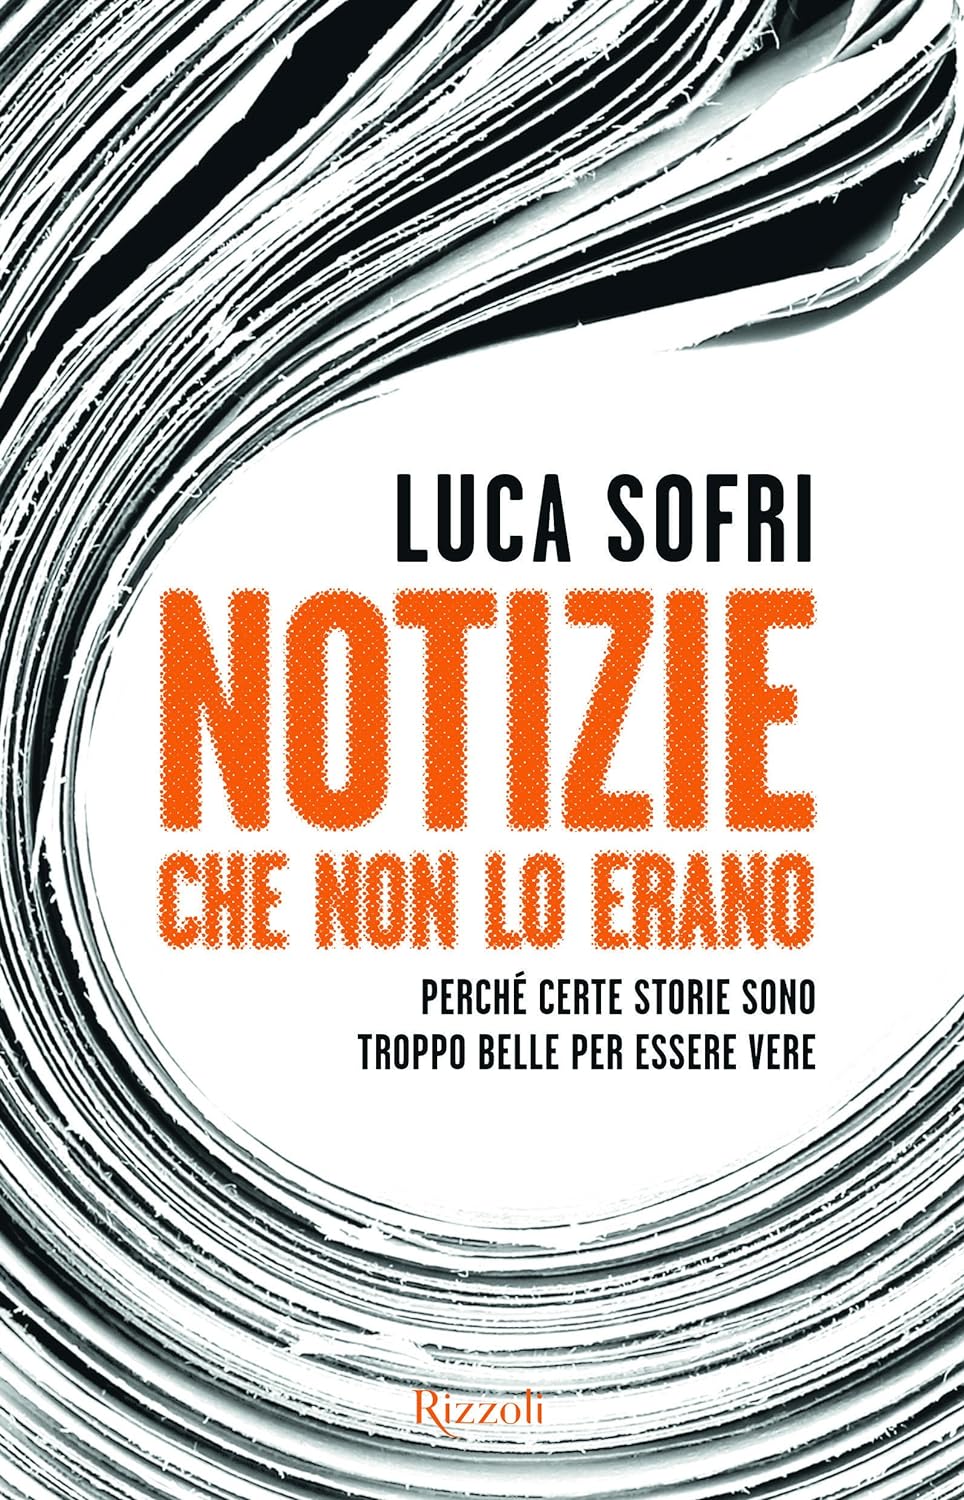 Luca Sofri: Notizie che non lo erano. (Italiano language, Rizzoli)